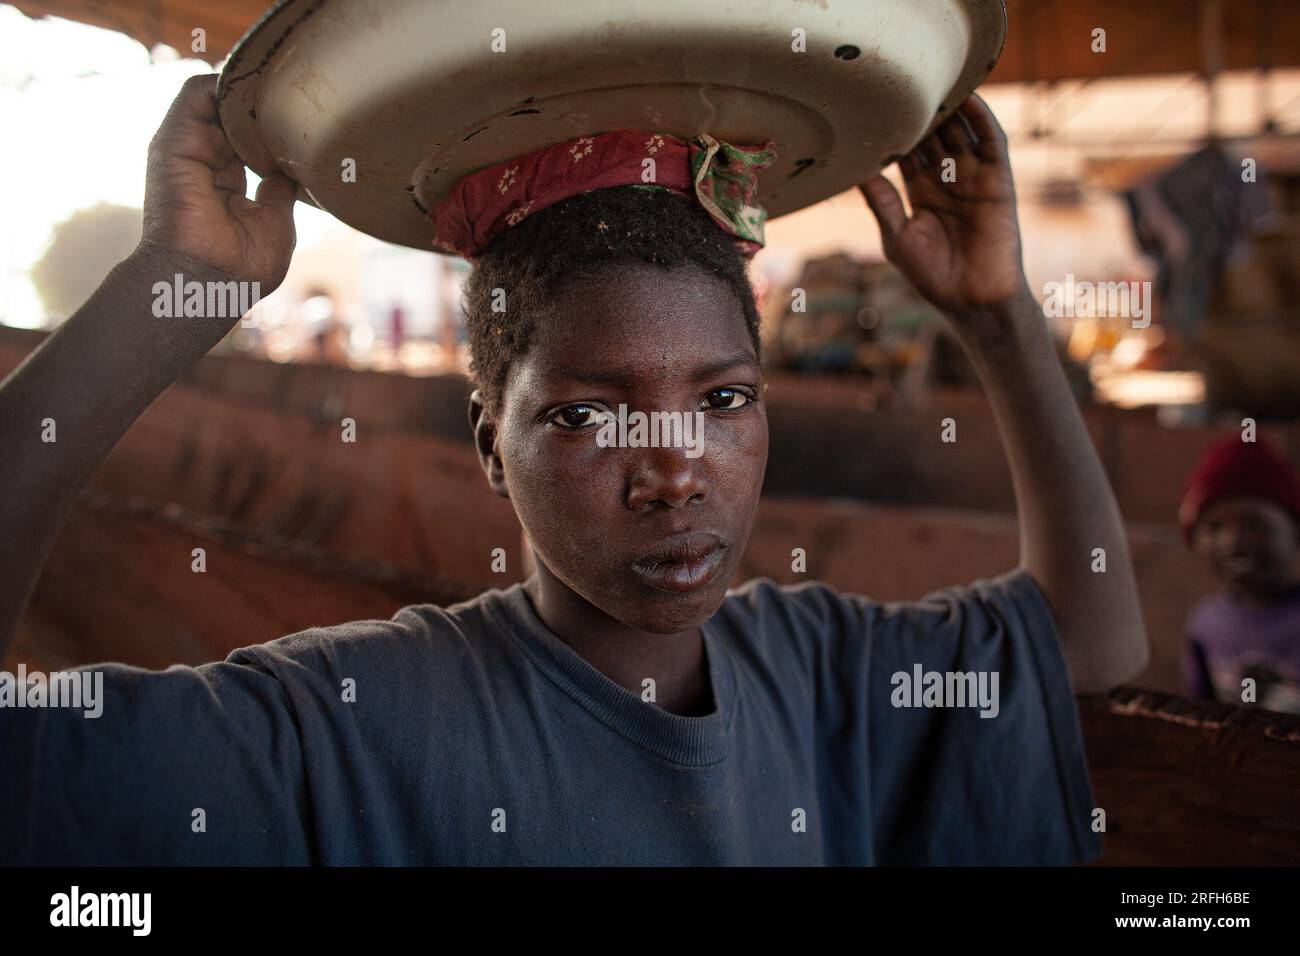 Ragazzo dell'Africa occidentale, di ritorno al villaggio, portando del cibo sulla sua testa. Approvvigionamento alimentare nelle comunità rurali. Mali, Africa Occidentale. Foto Stock